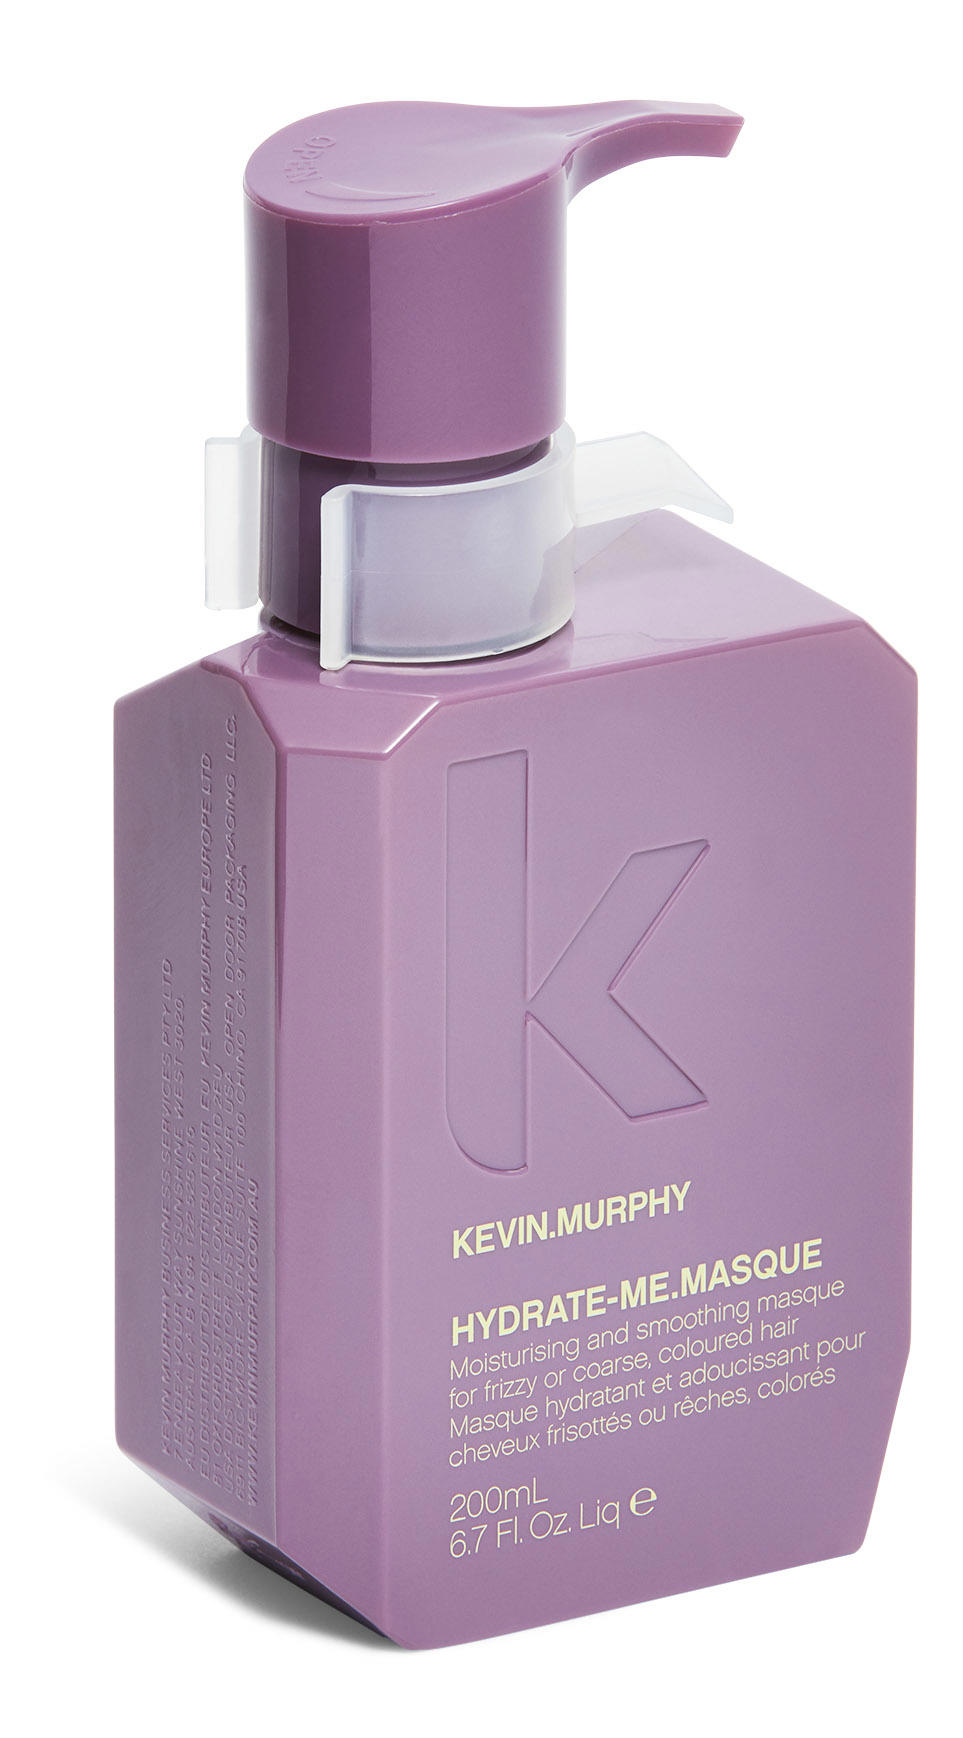 Hydrateme Masque, de KEVIN.MURPHY